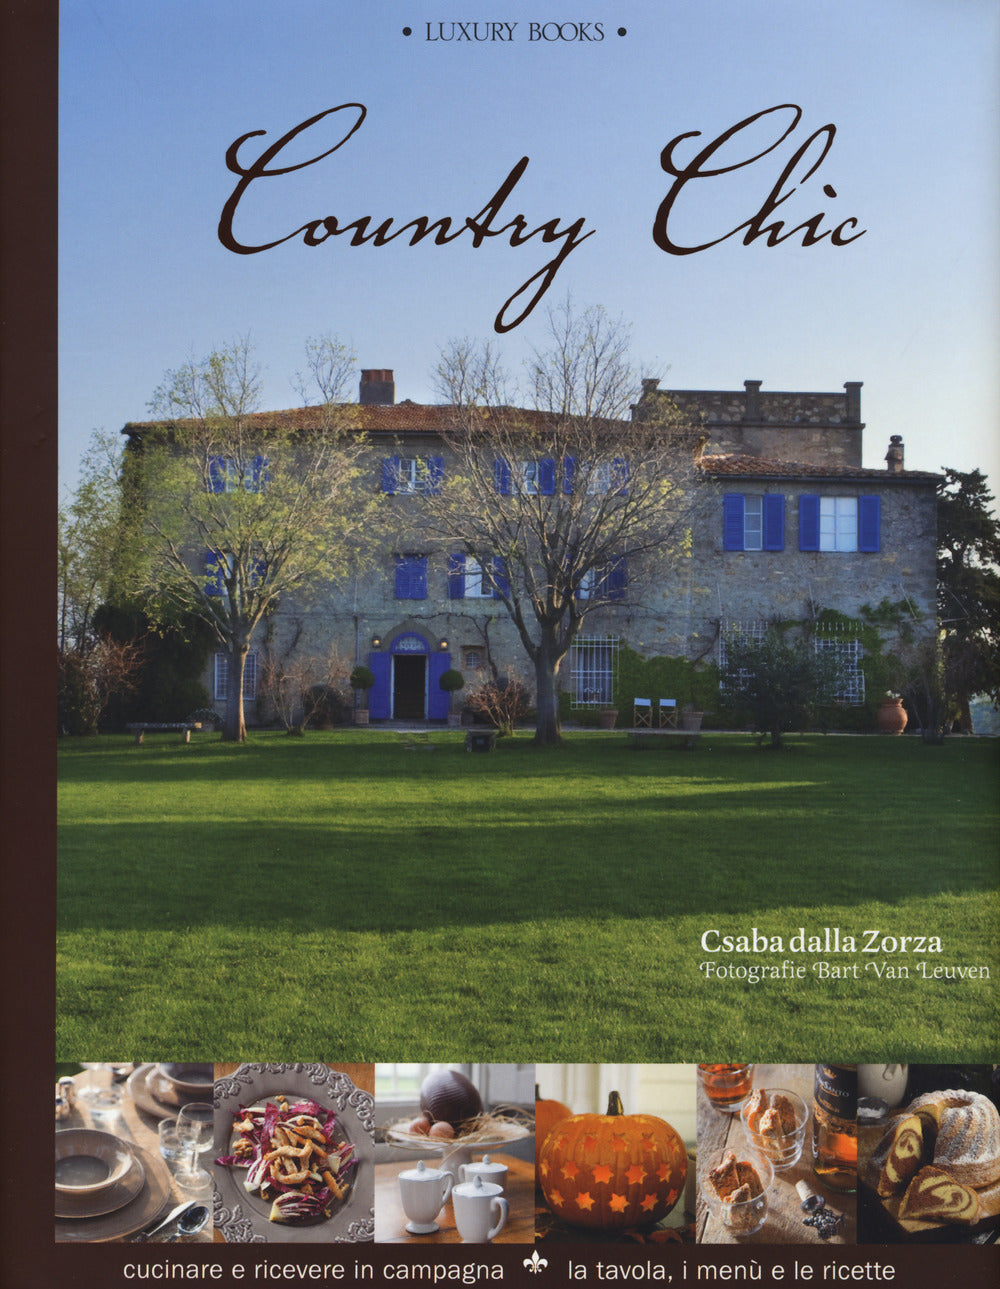 Country chic. Cucinare e ricevere in campagna. La tavola, i menù e le ricette.